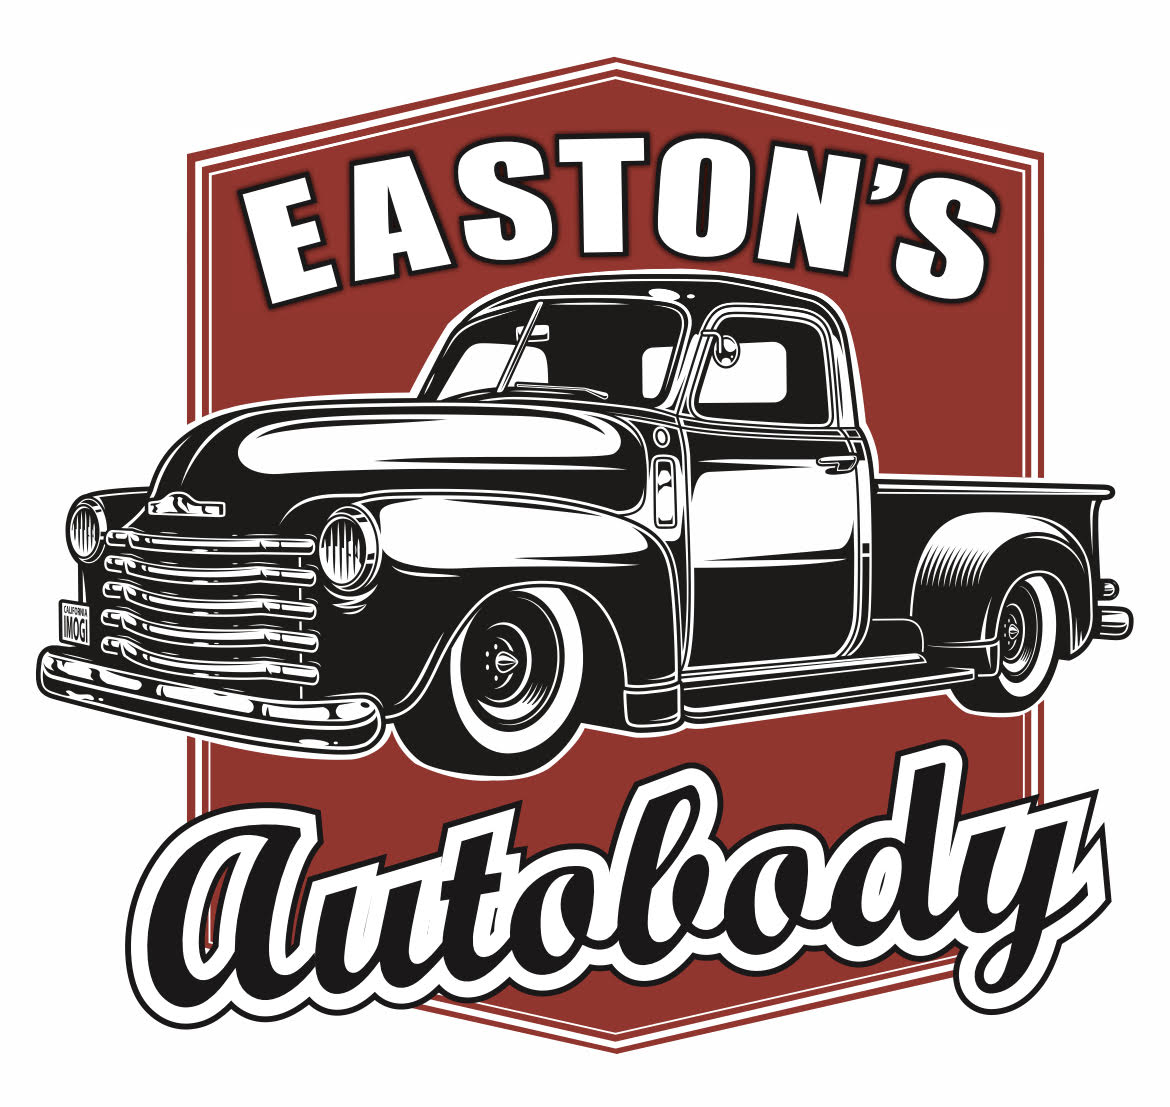 Thank you to our Team Sponsor - Easton's Autobody!!